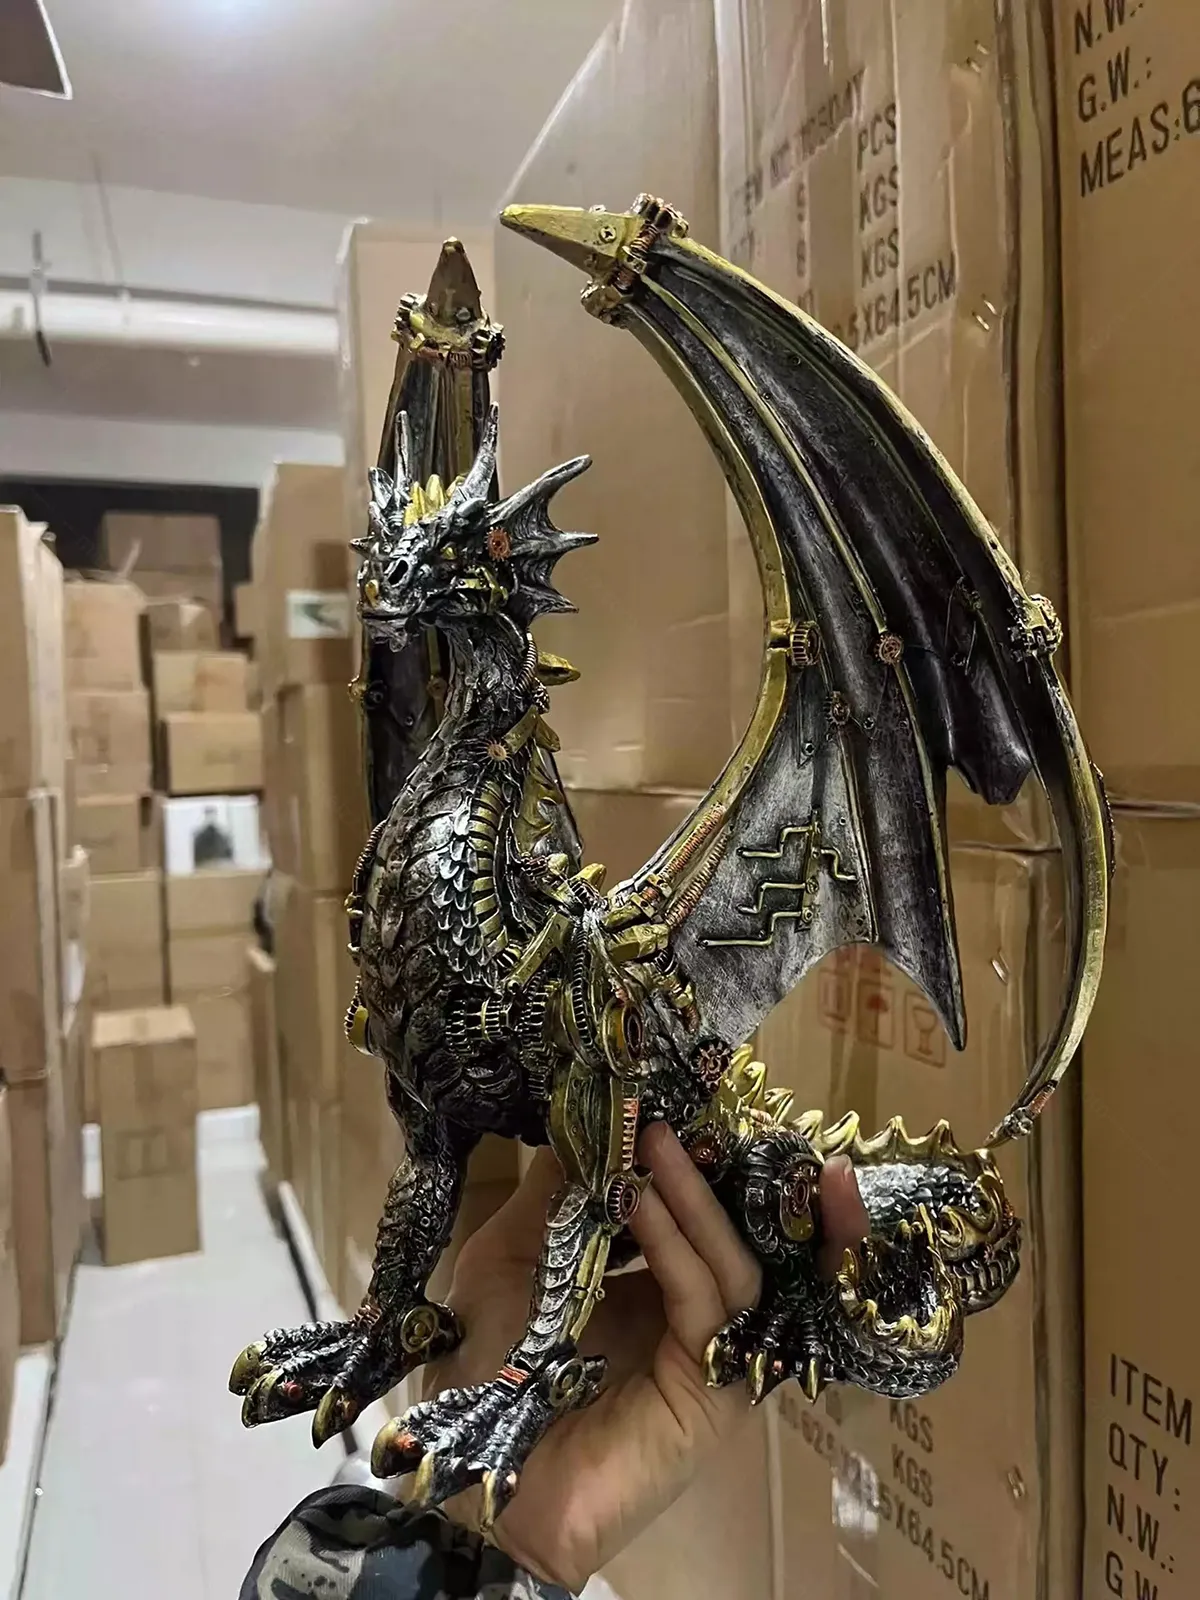 steampunk dragon statue